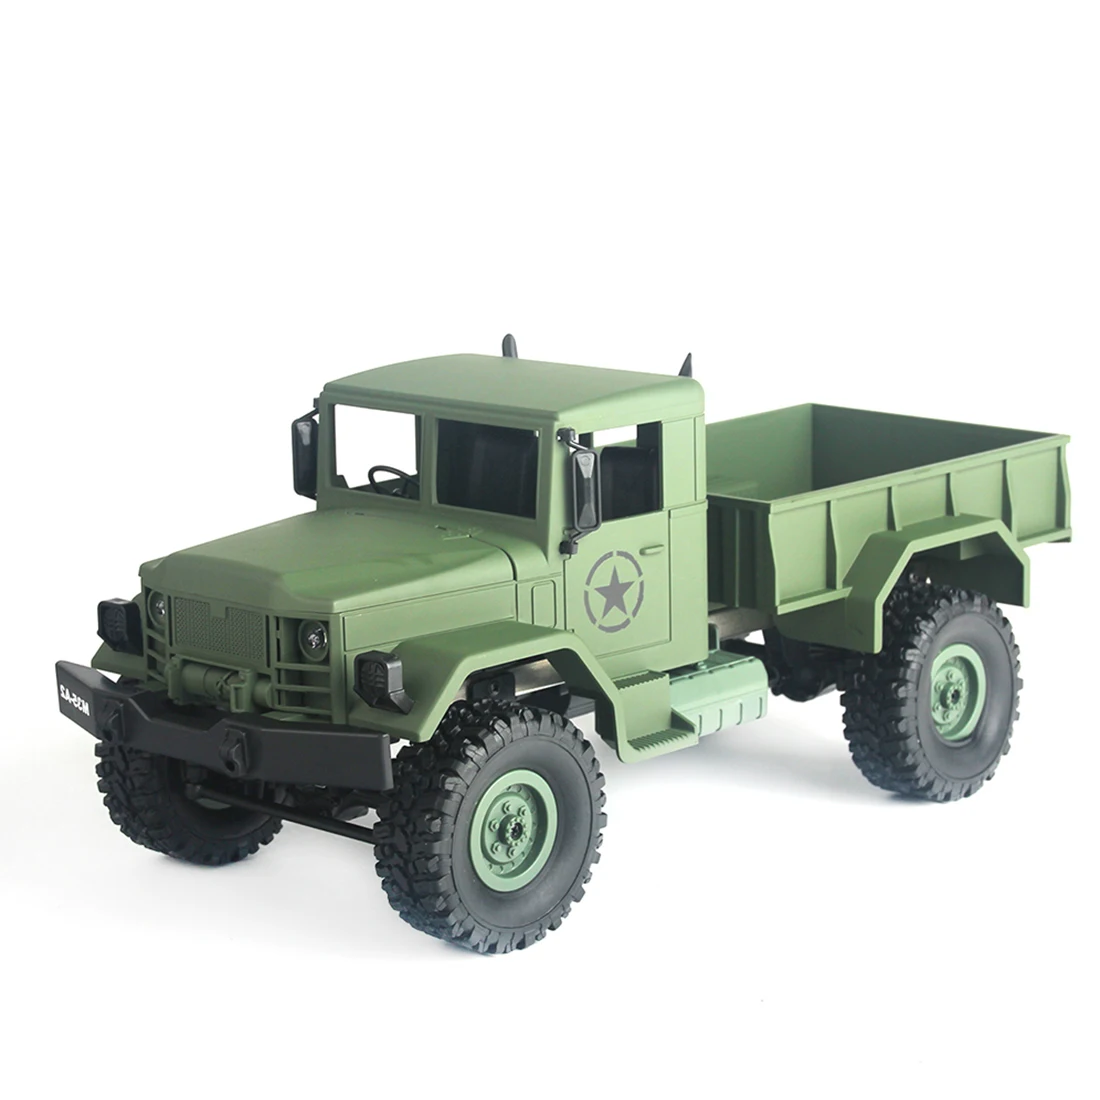 15 минут рабочего времени MNMODLl MN-35 2,4G четыре колеса скалолазание RC грузовик Camion RC игрушки для детей - Цвет: Green